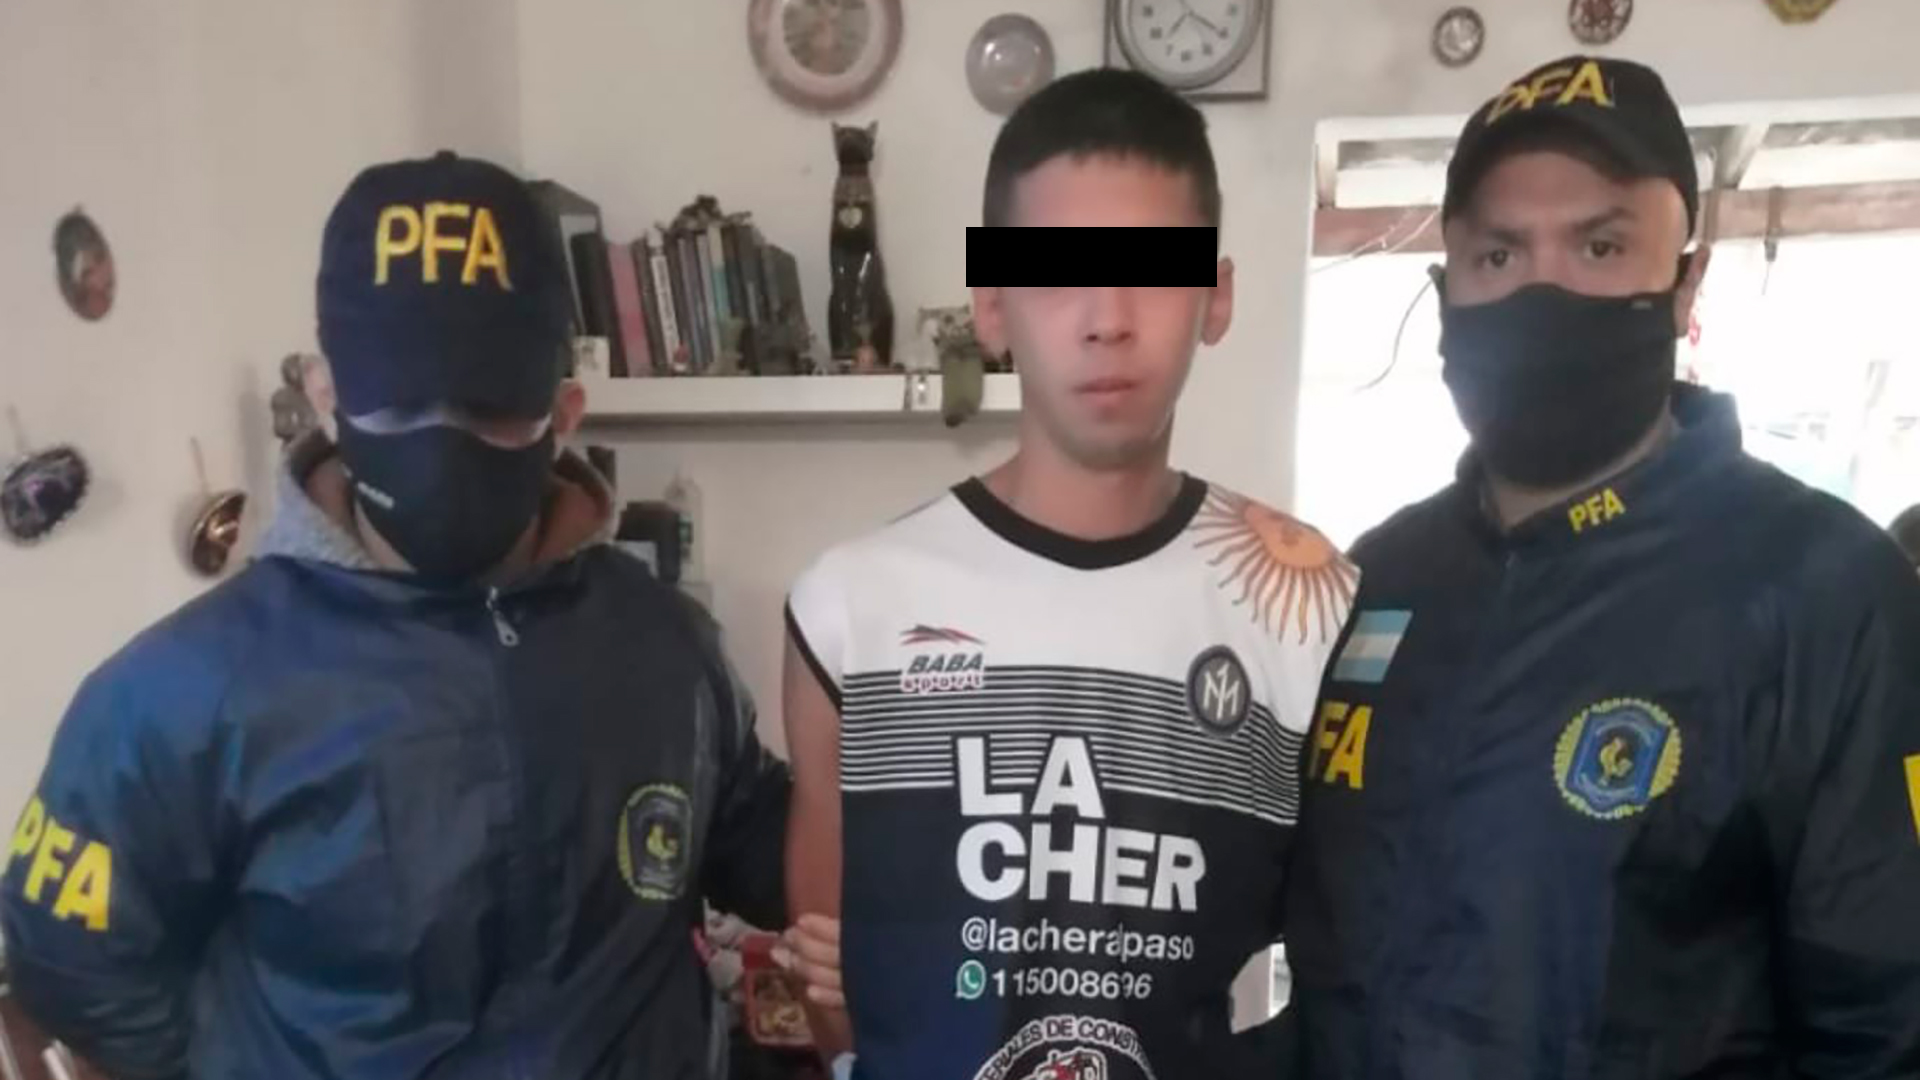 "Culapio", hoy de 23 años, tras ser arrestado por la PFA esta mañana